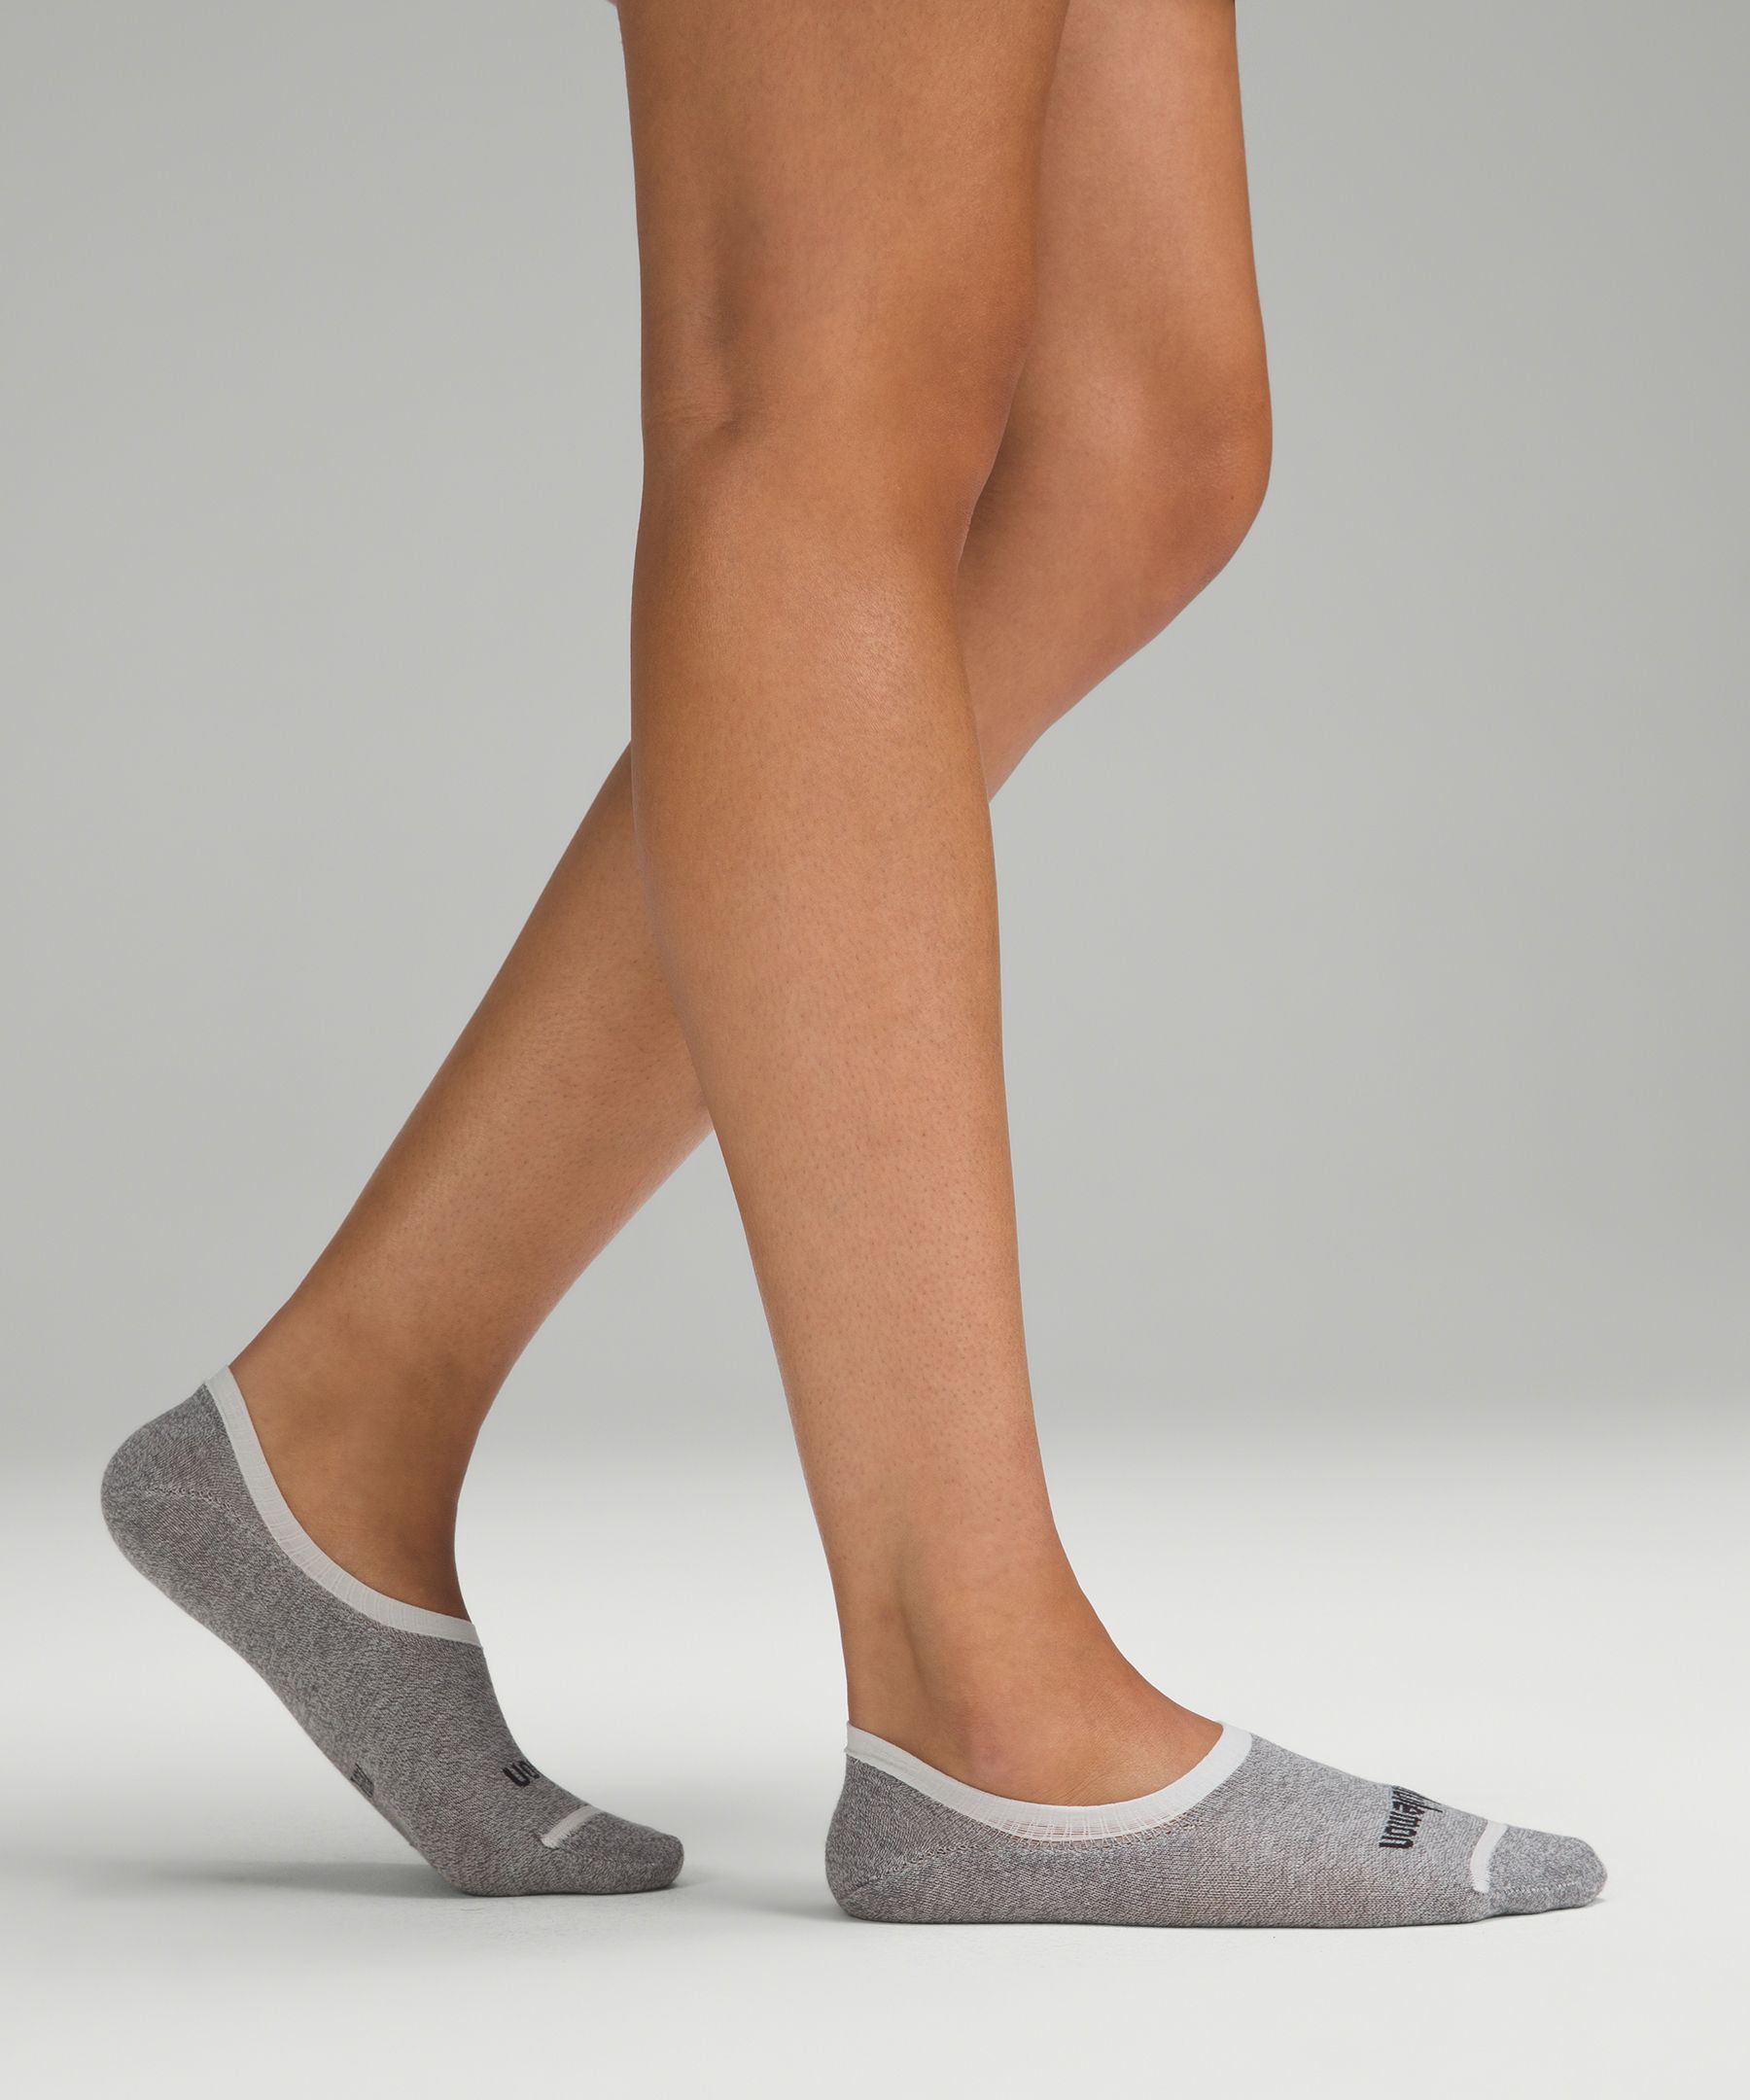 Shop Lululemon Daily Stride Comfort No-show Socks 3 Pack